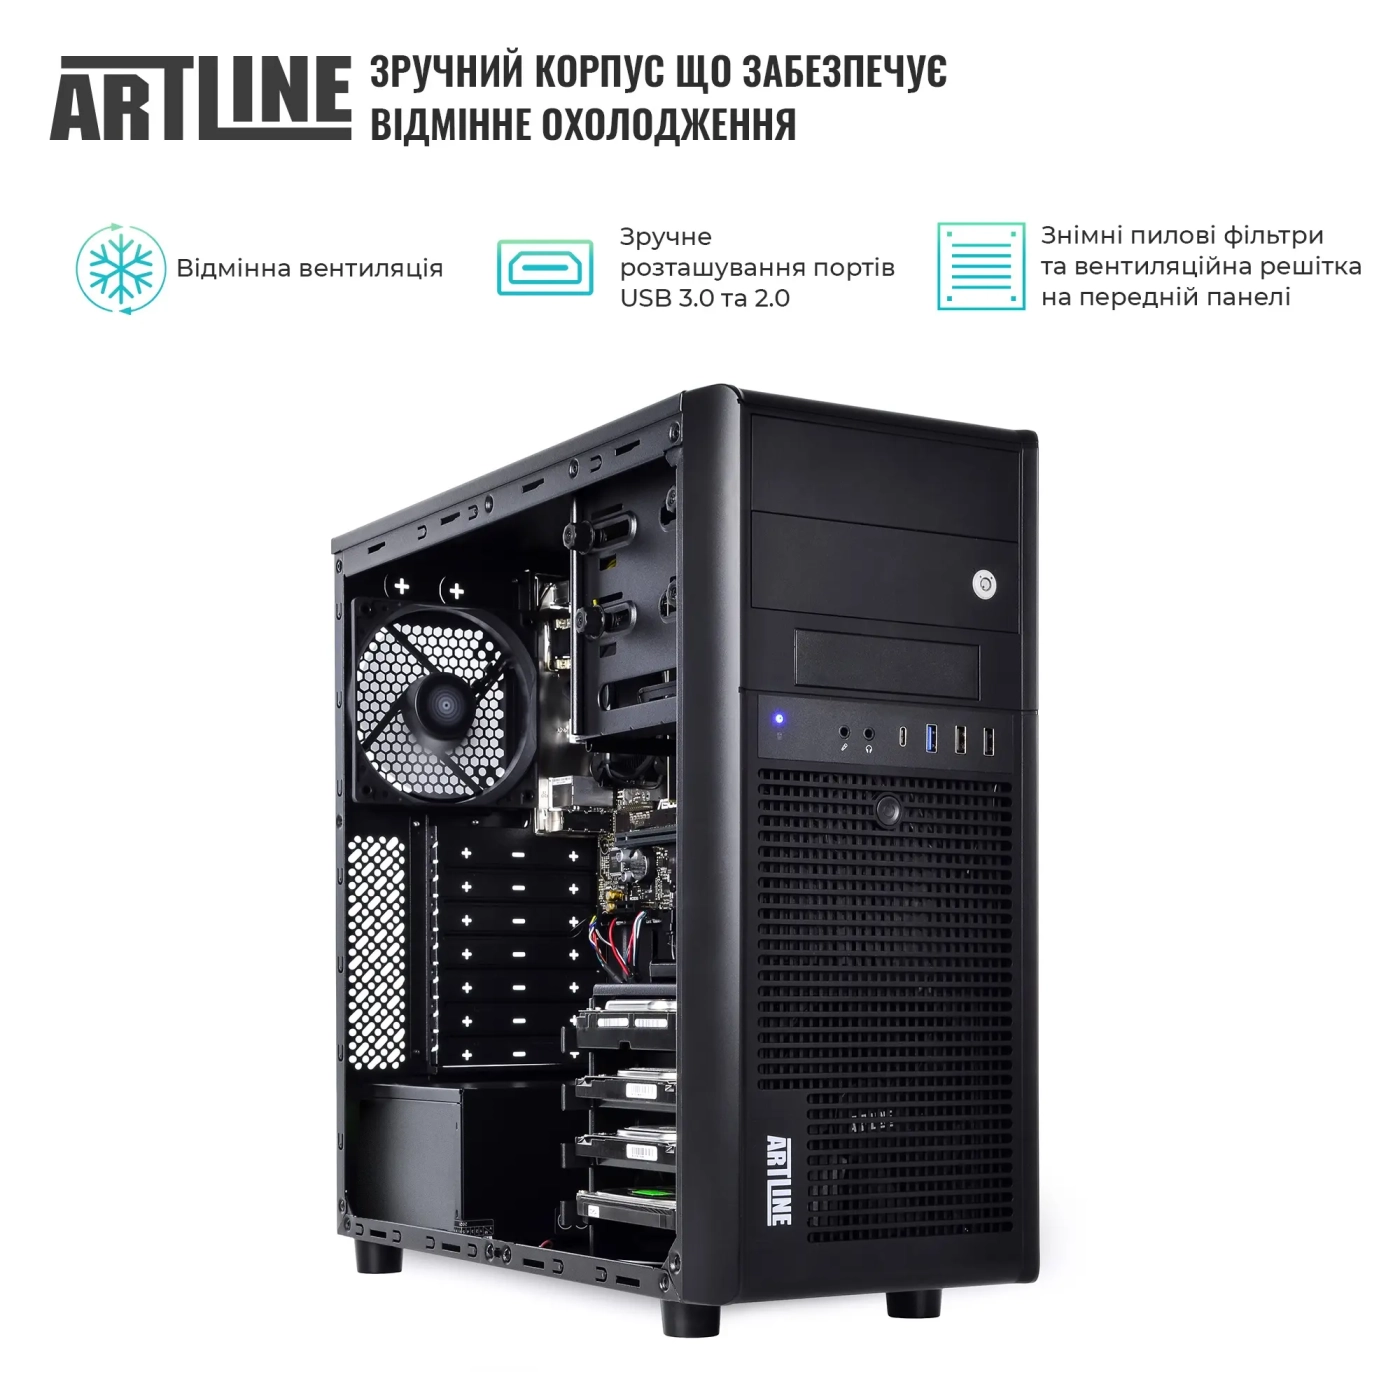 Купить Сервер ARTLINE Business T38 (T38v19) - фото 3